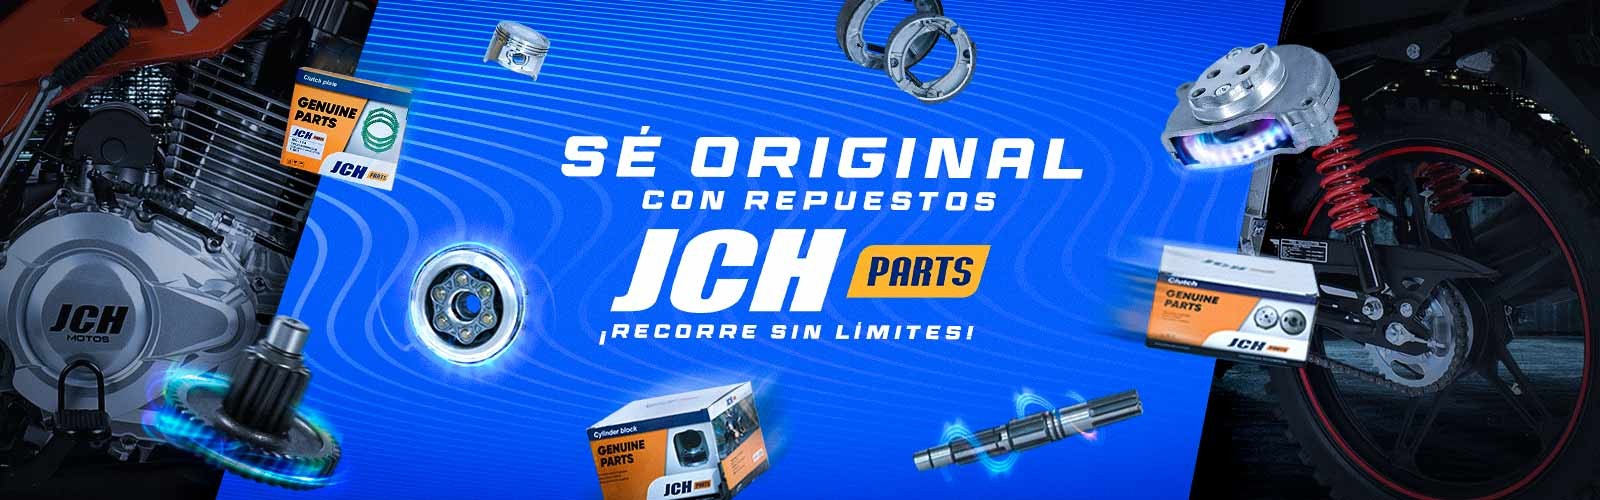 Repuesto JCH parts